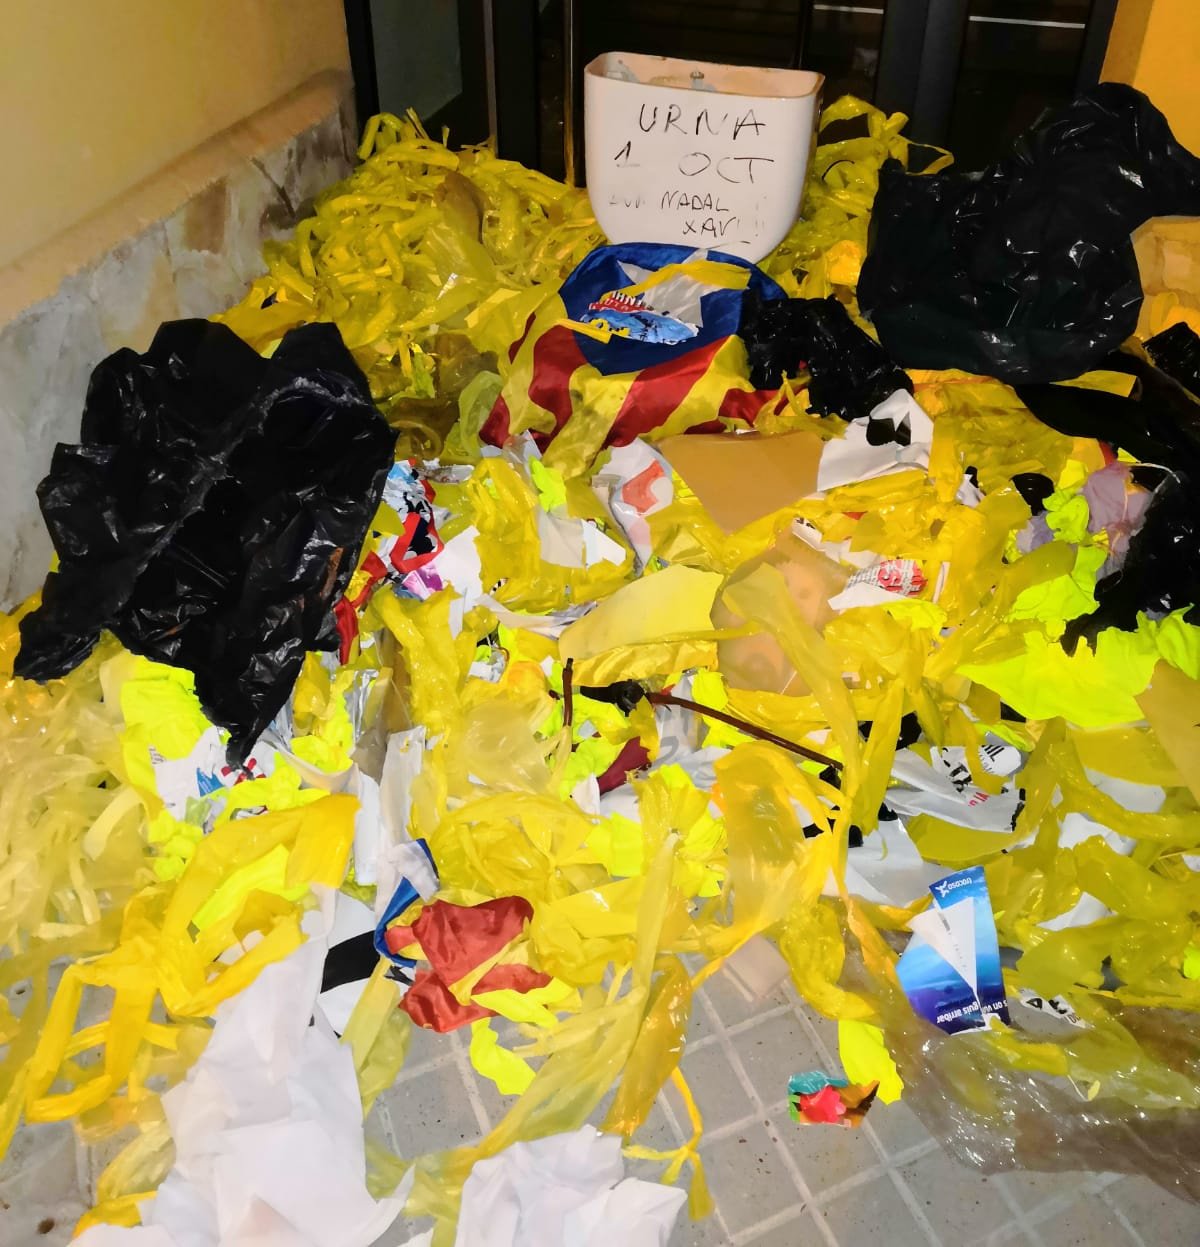 Llenan de basura y lazos amarillos rotos la casa del alcalde de Vilassar de Dalt